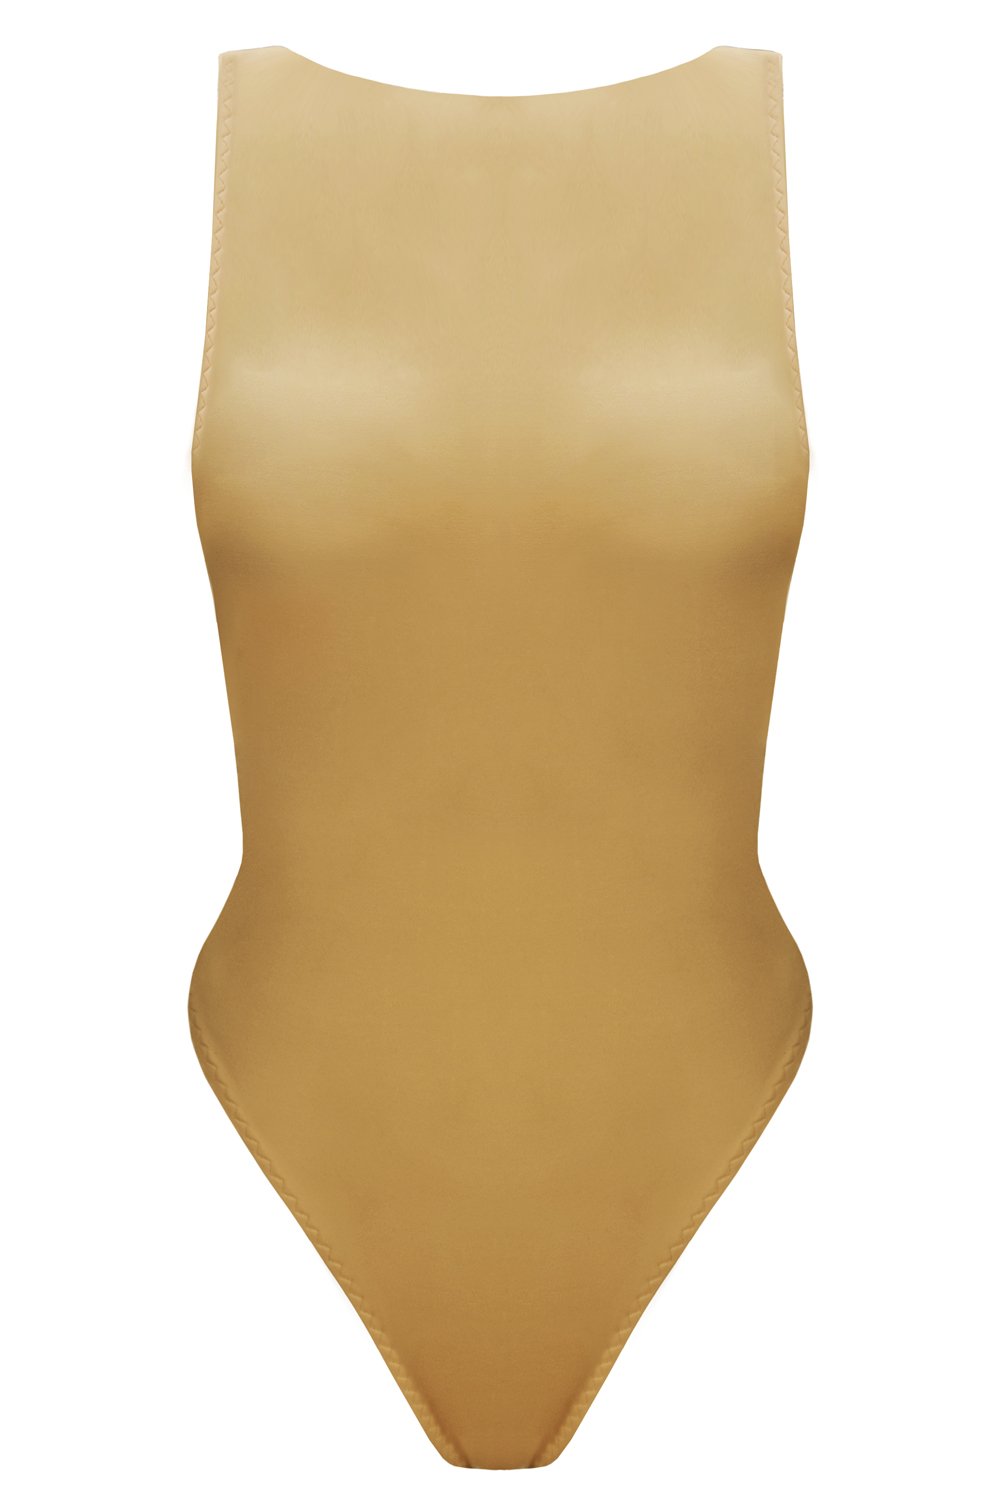 Vertex Golden Beige swimsuit